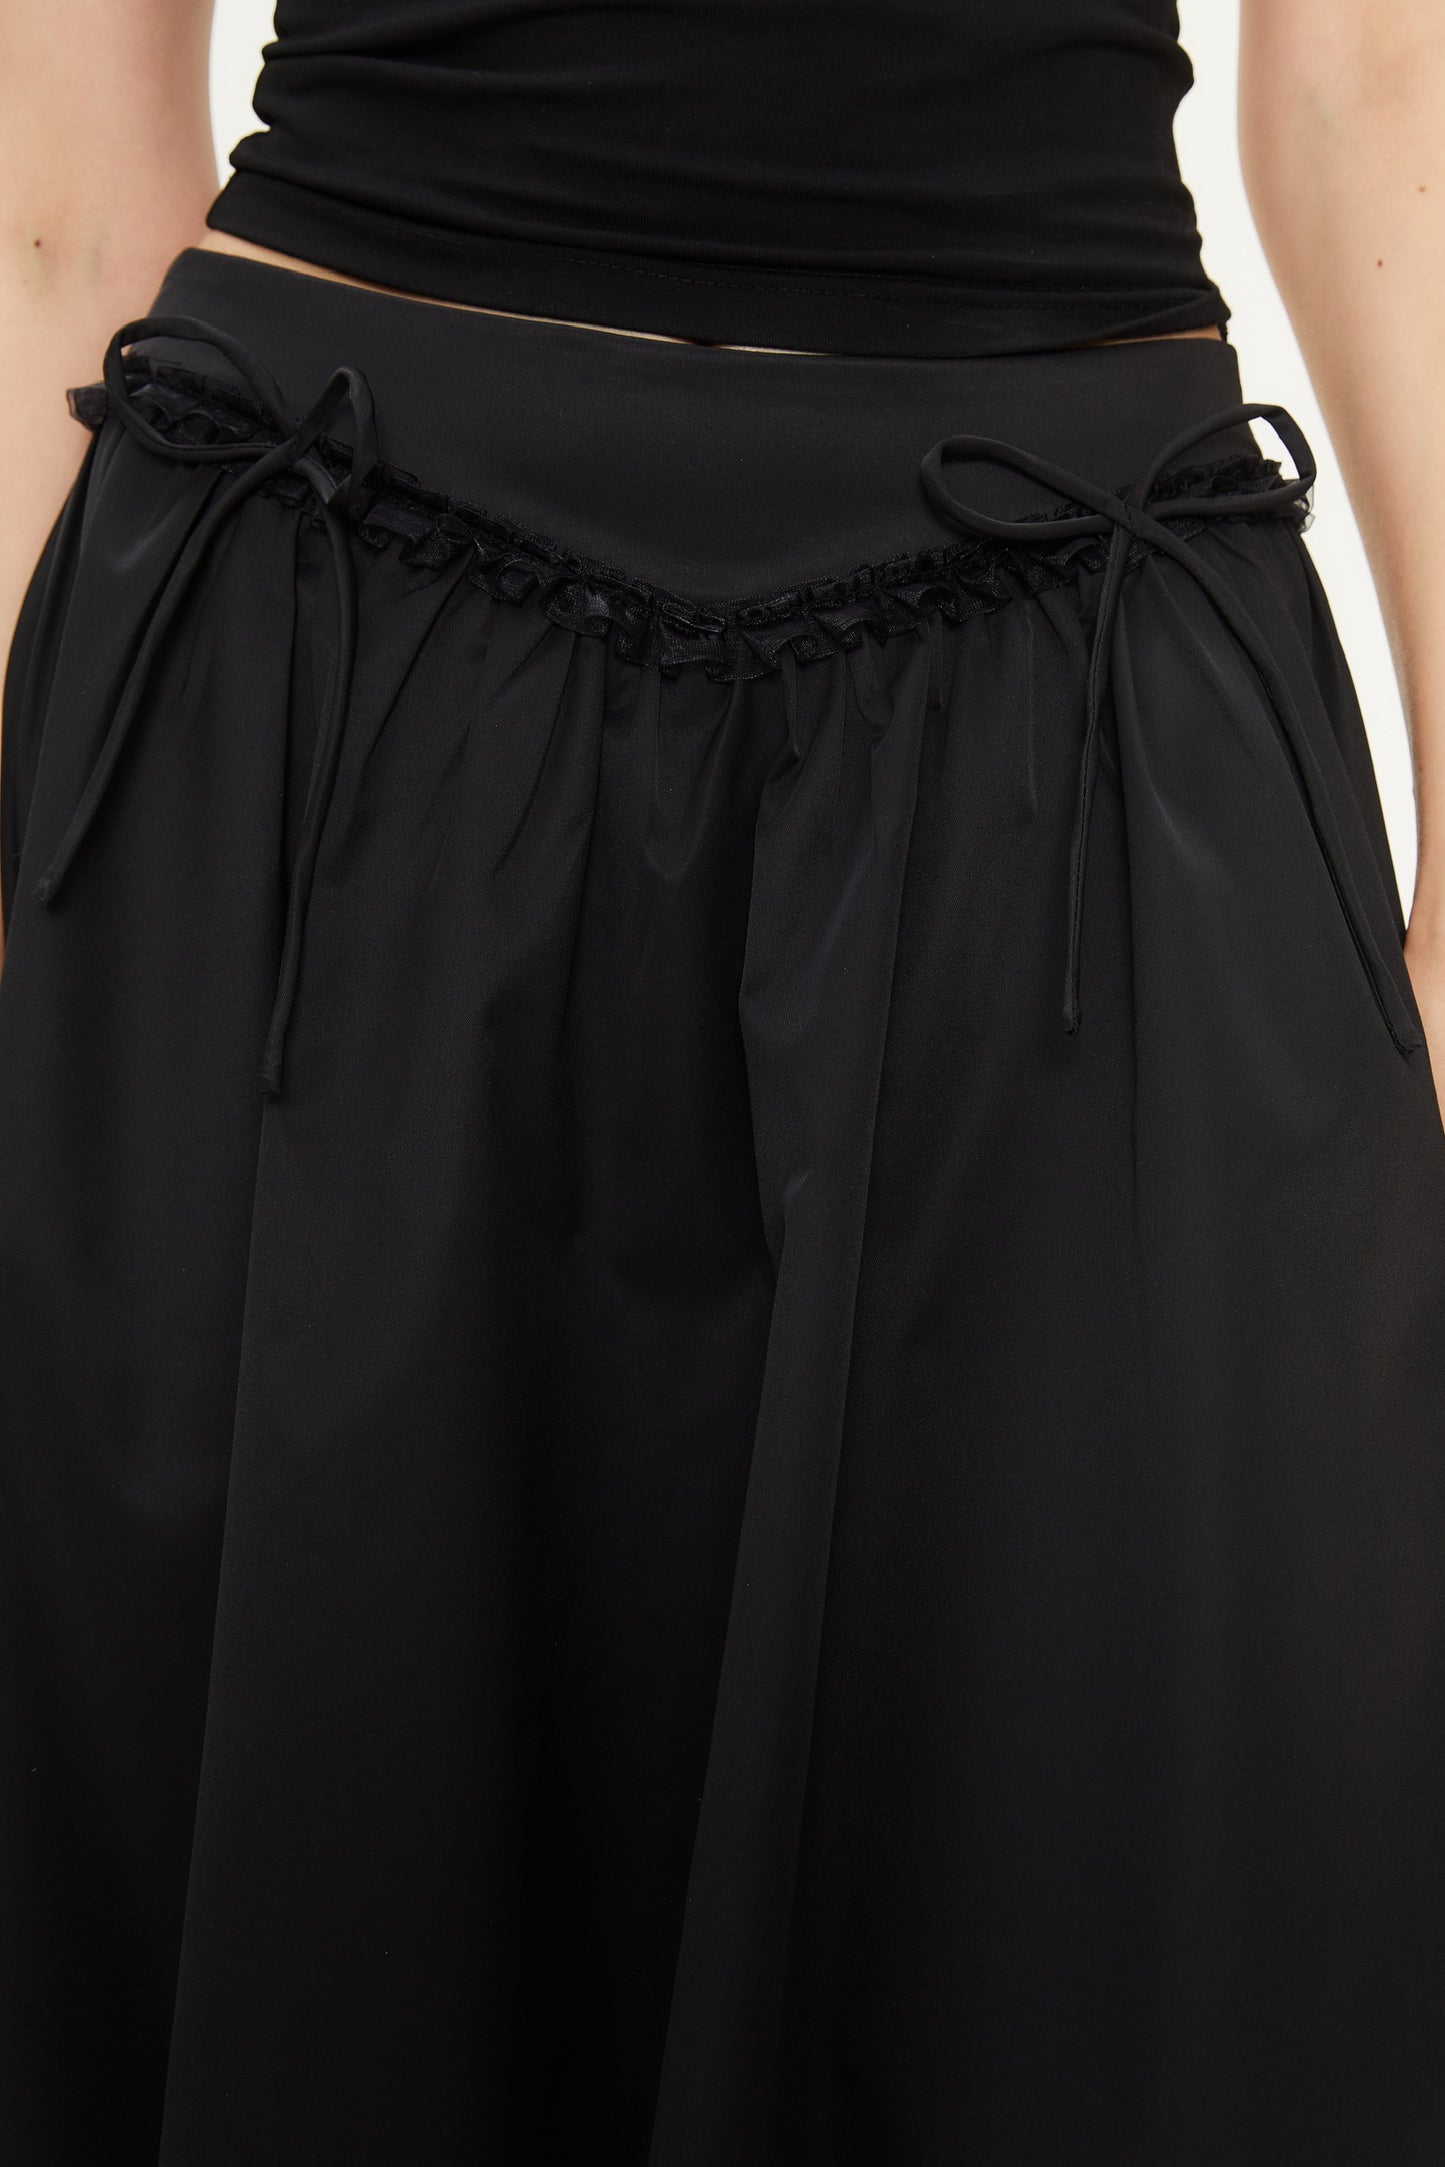 Alva Bow Puffy Skirt in Black